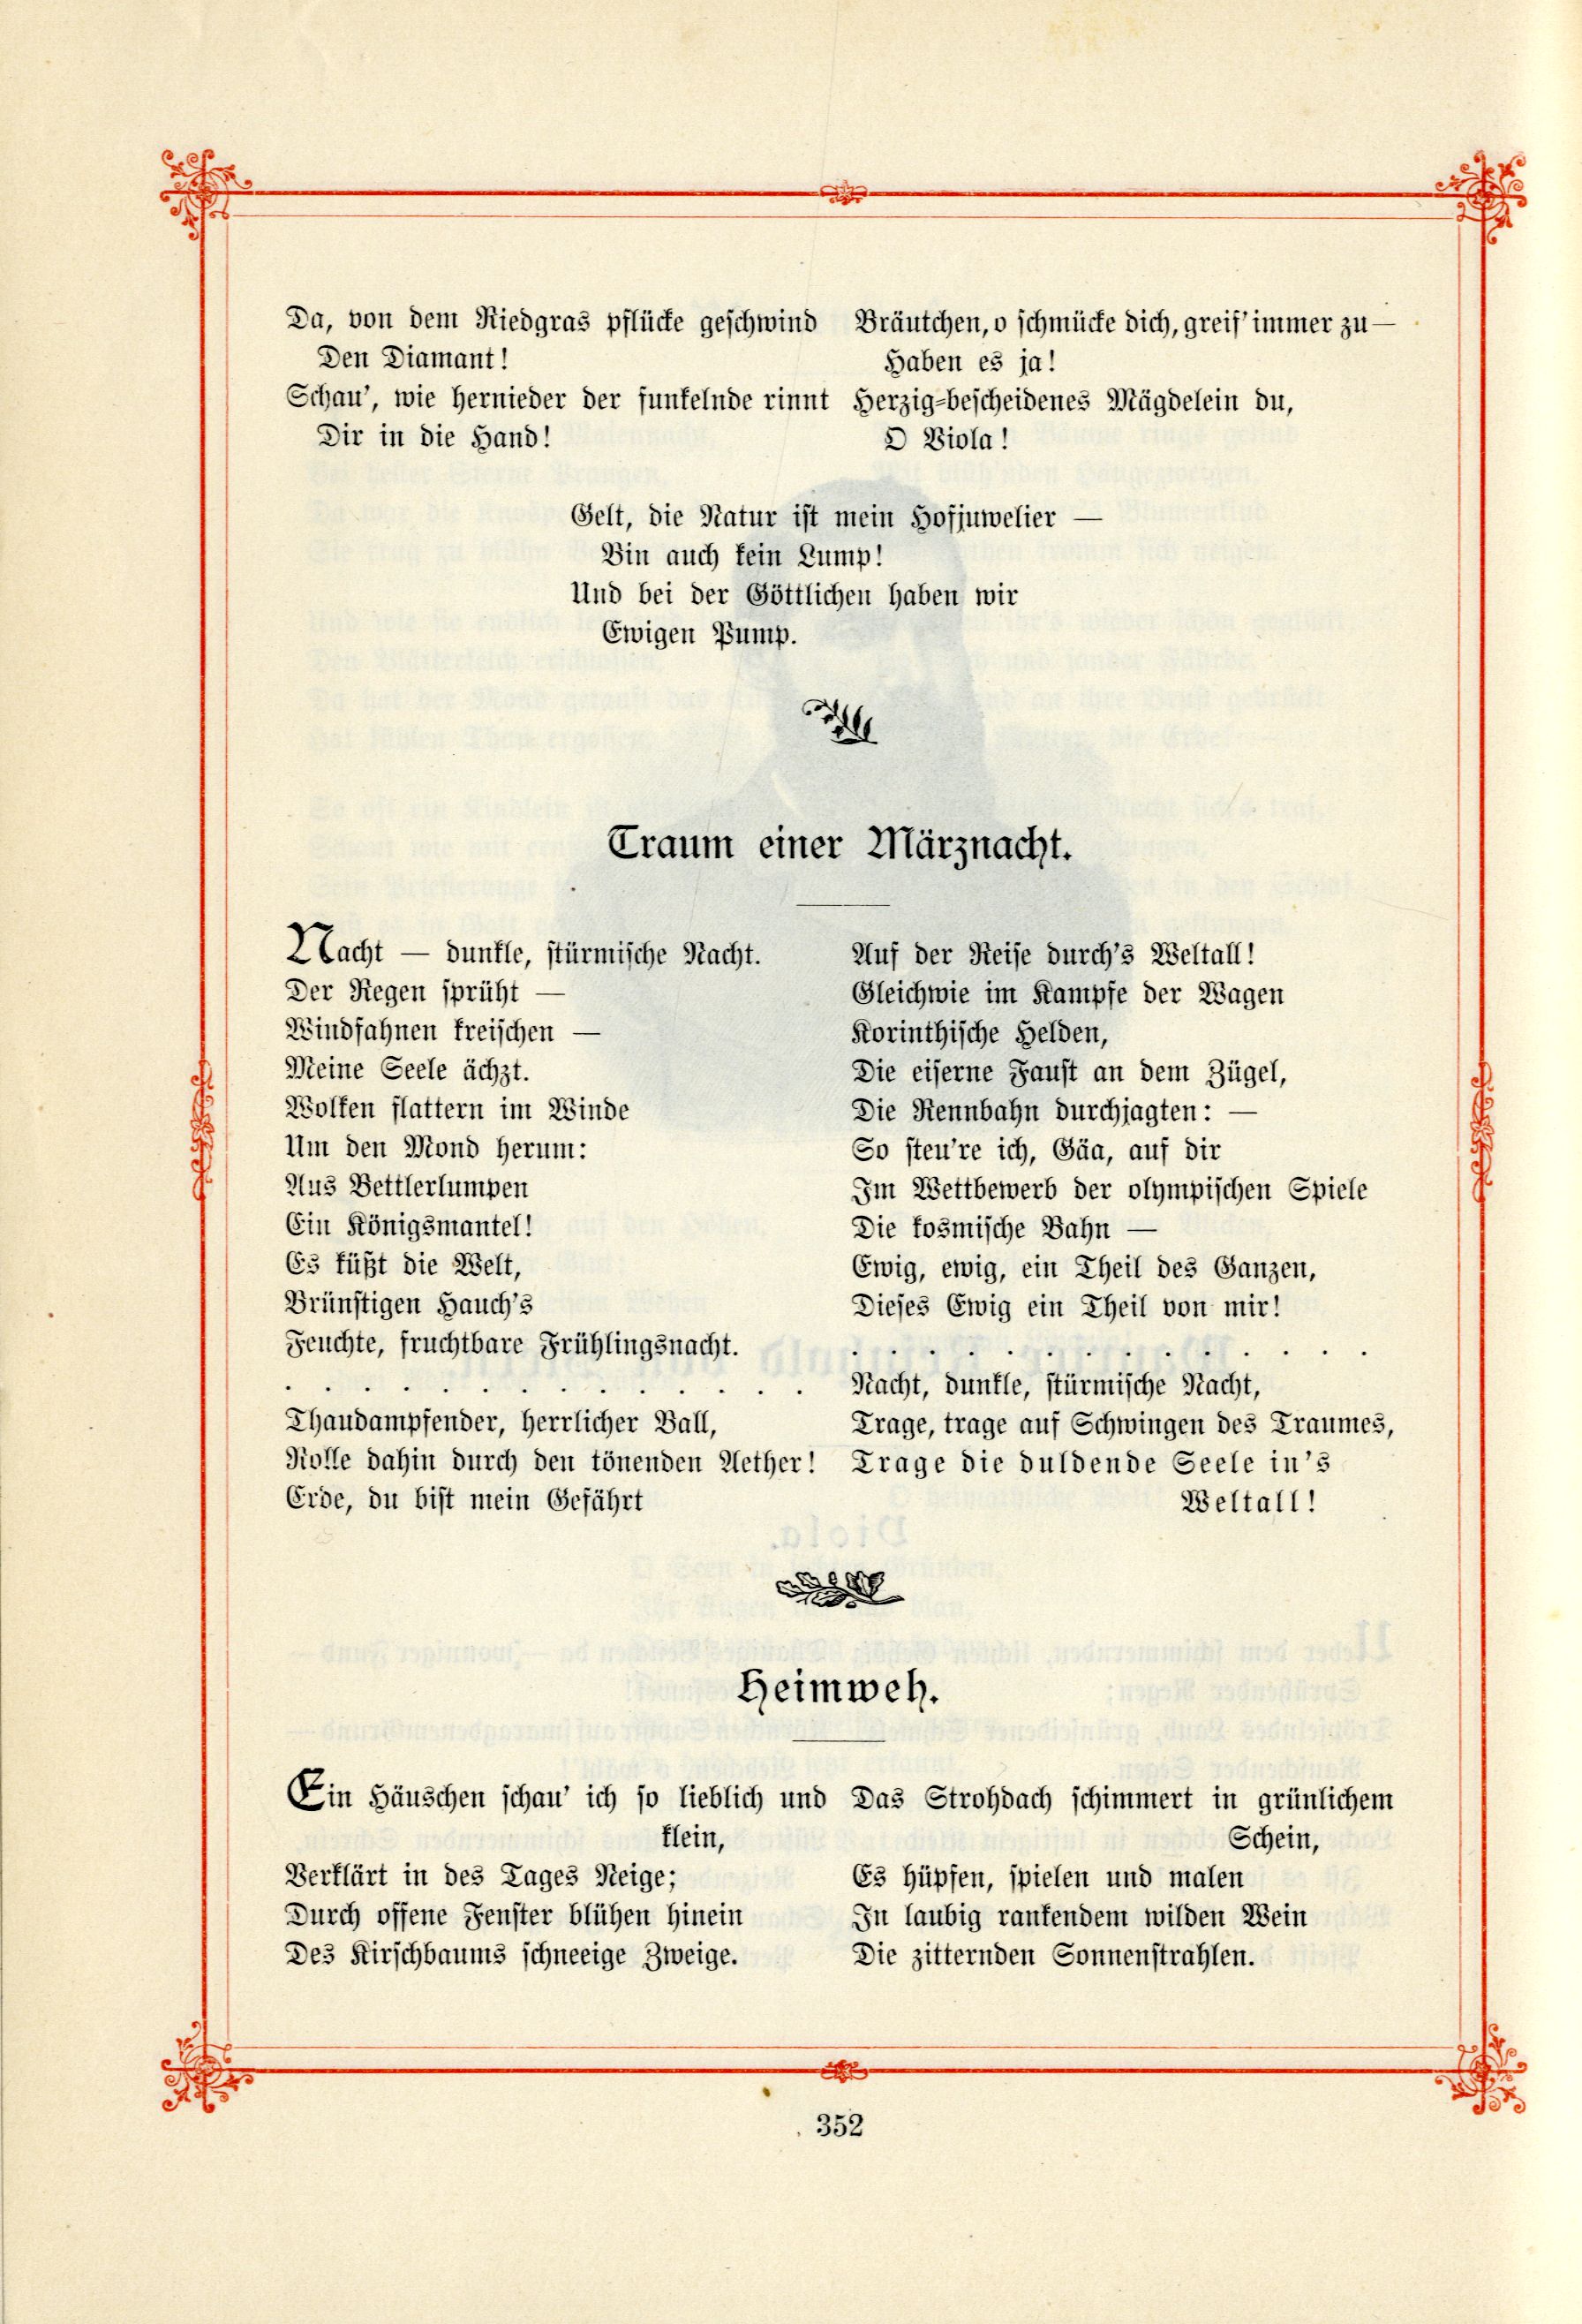 Heimweh (1895) | 1. (352) Main body of text